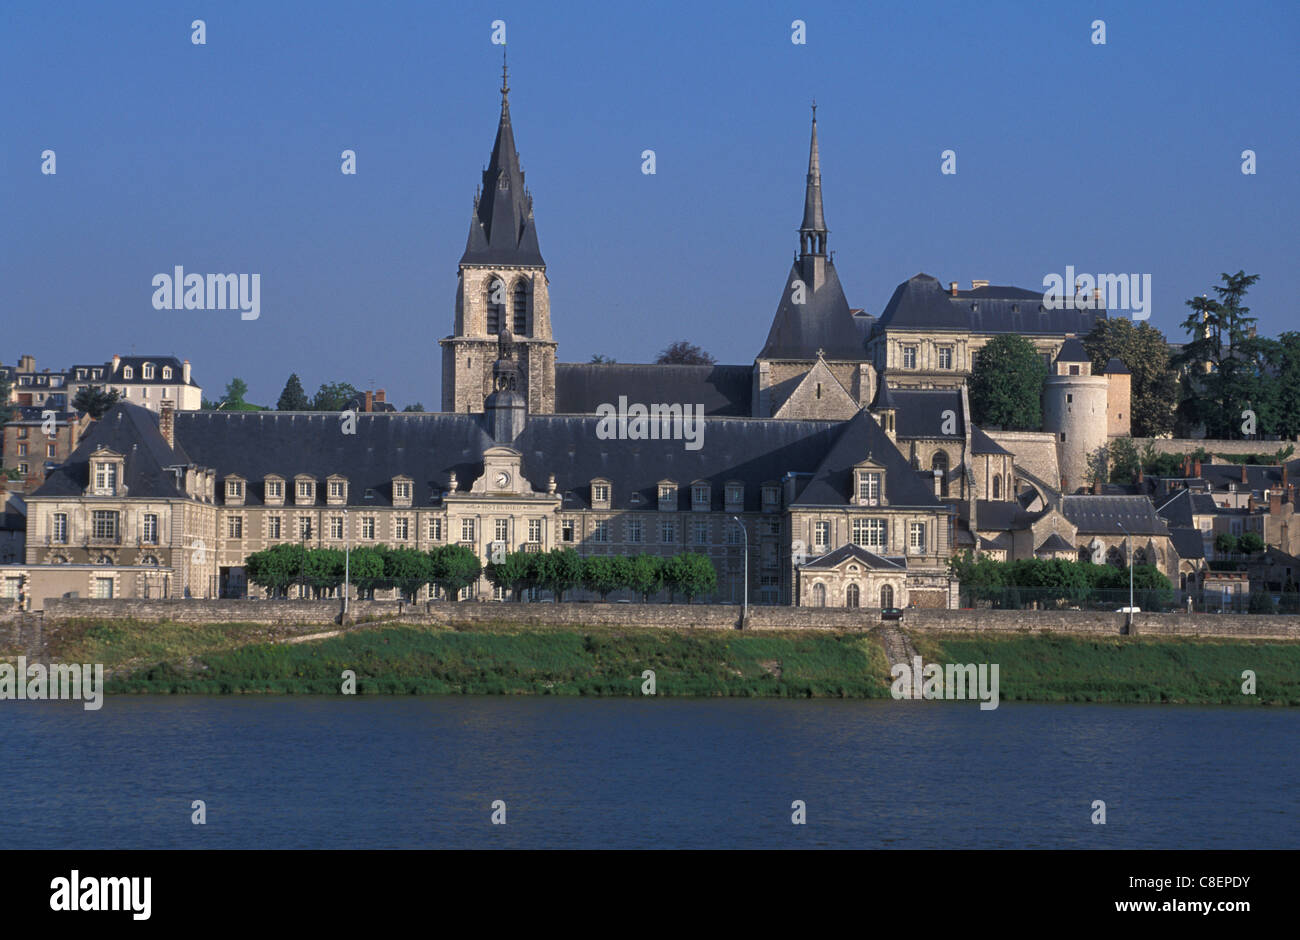 Blois, Val de Loire, Loire valley, France, Europe, river, town Stock Photo